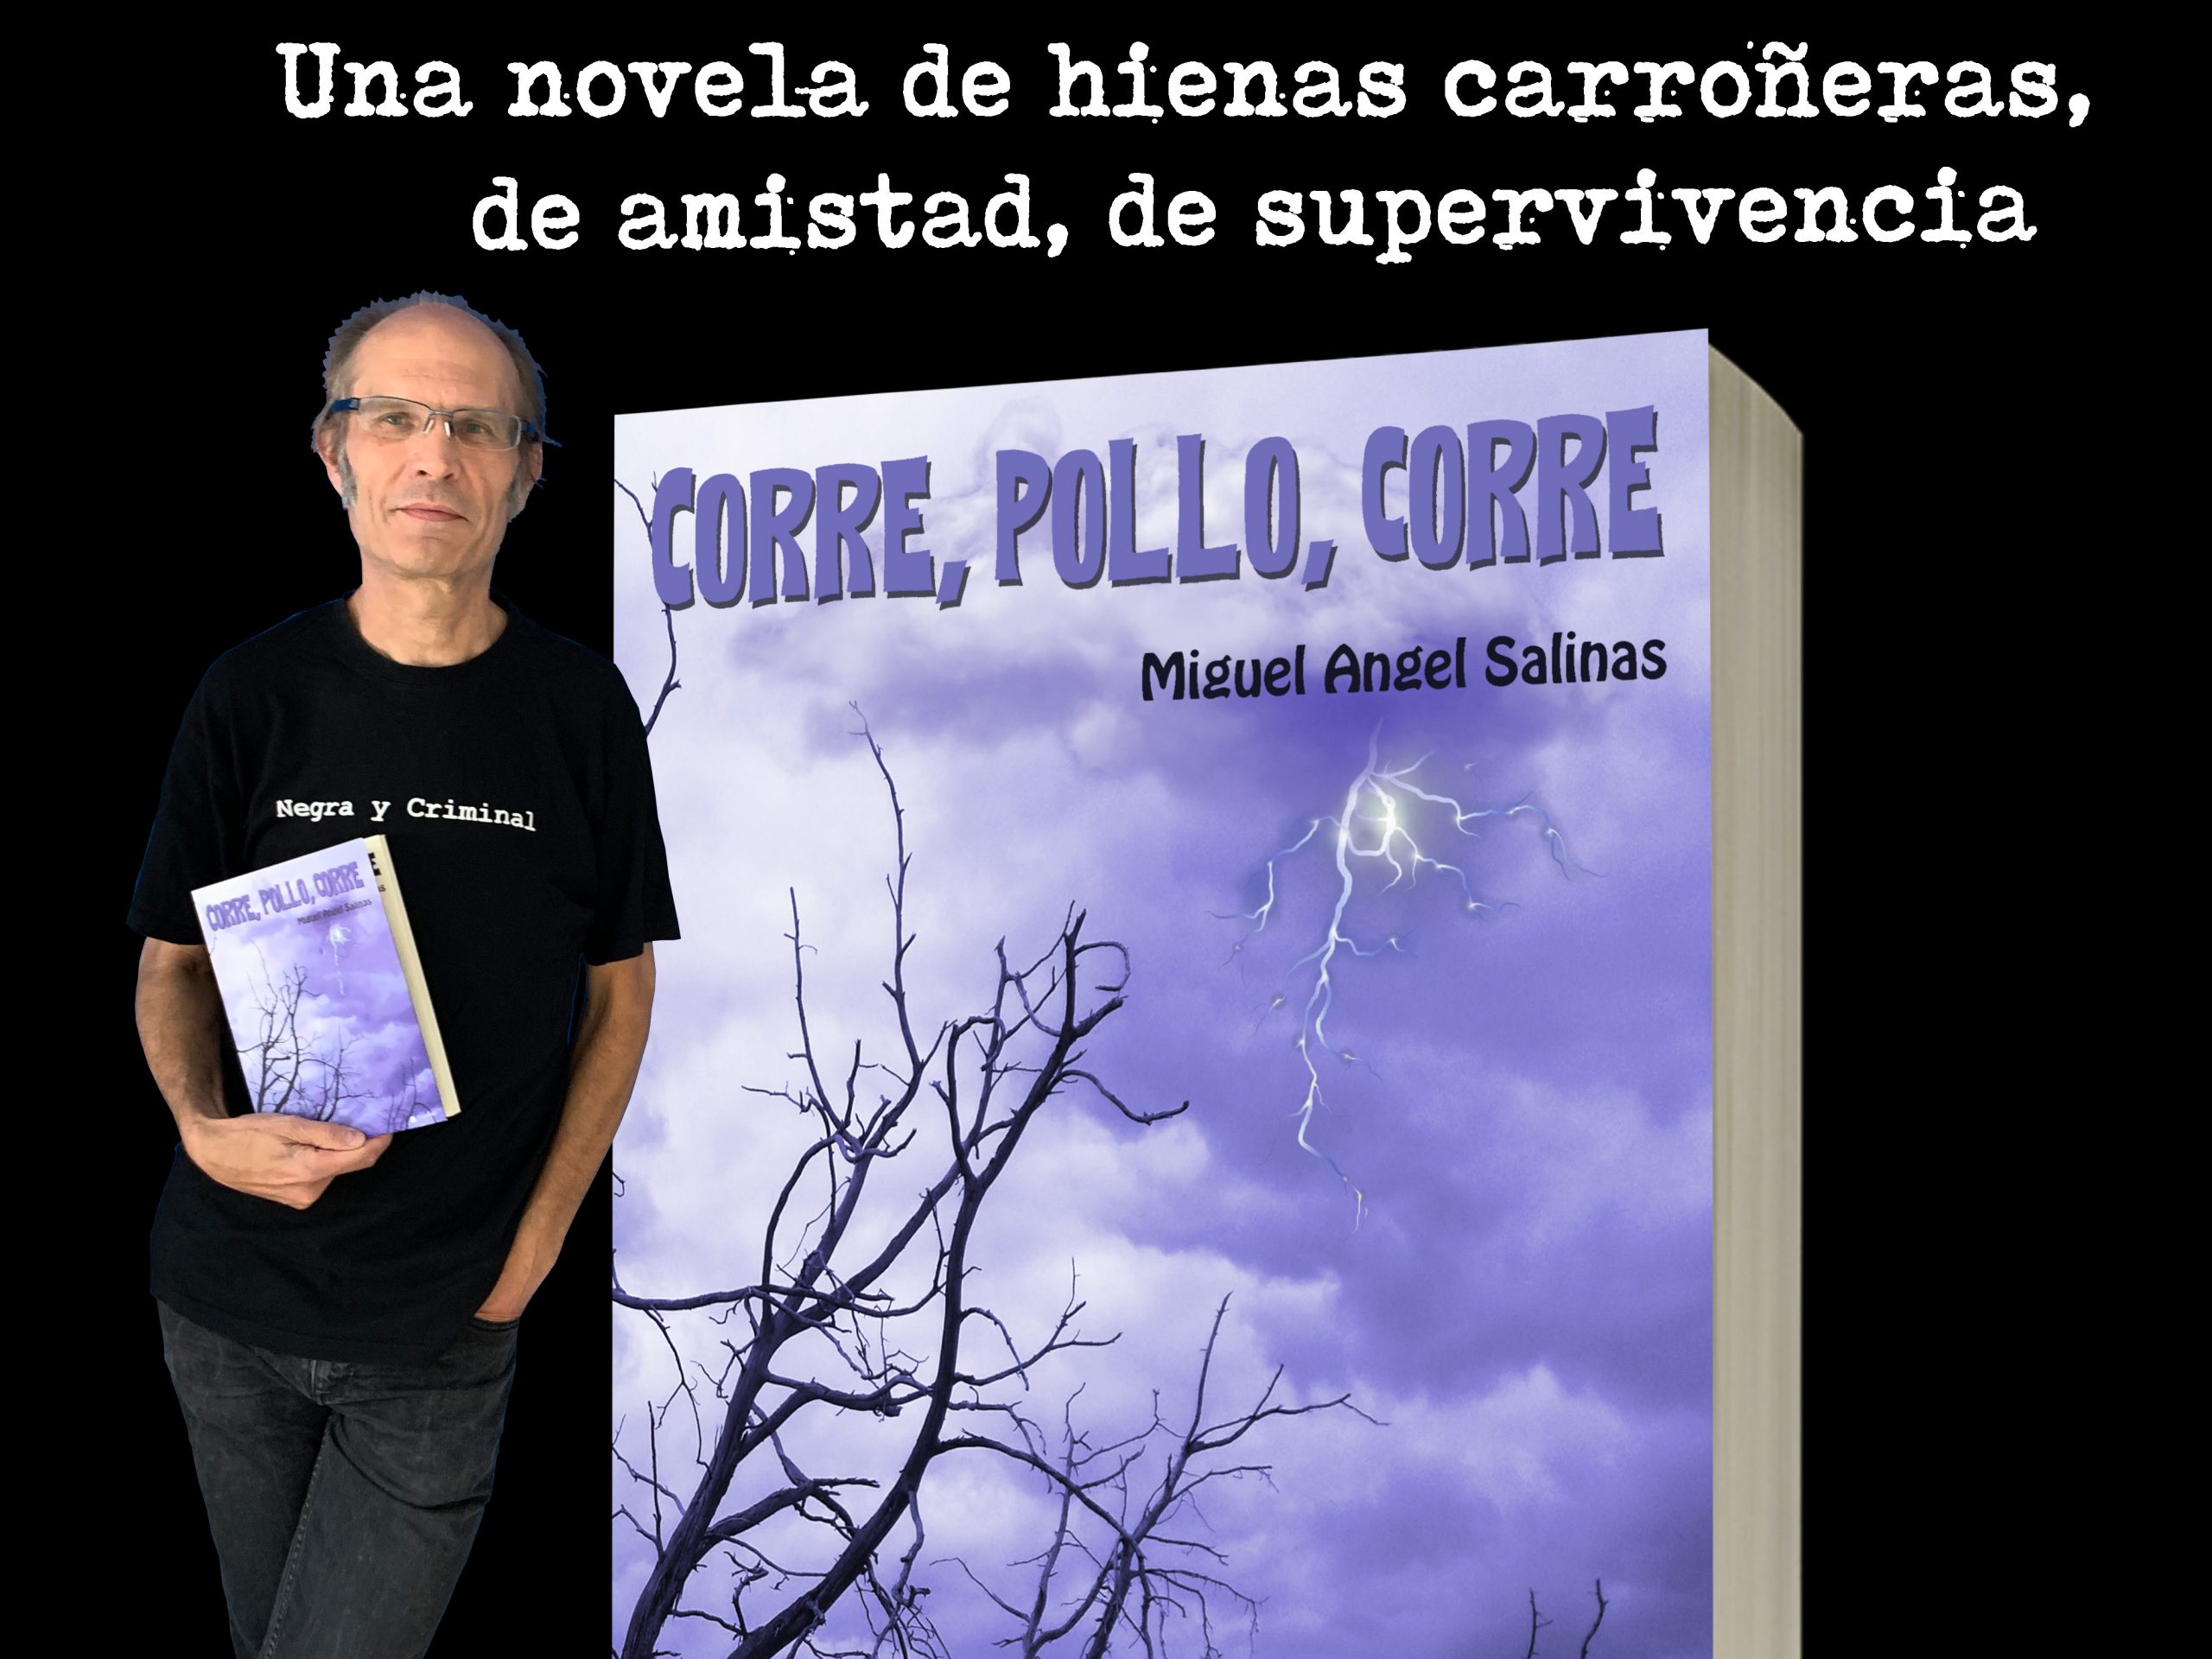 Conoce el último libro de Miguel Ángel Salinas, «Corre, pollo, corre», una novela que no te puedes perder.